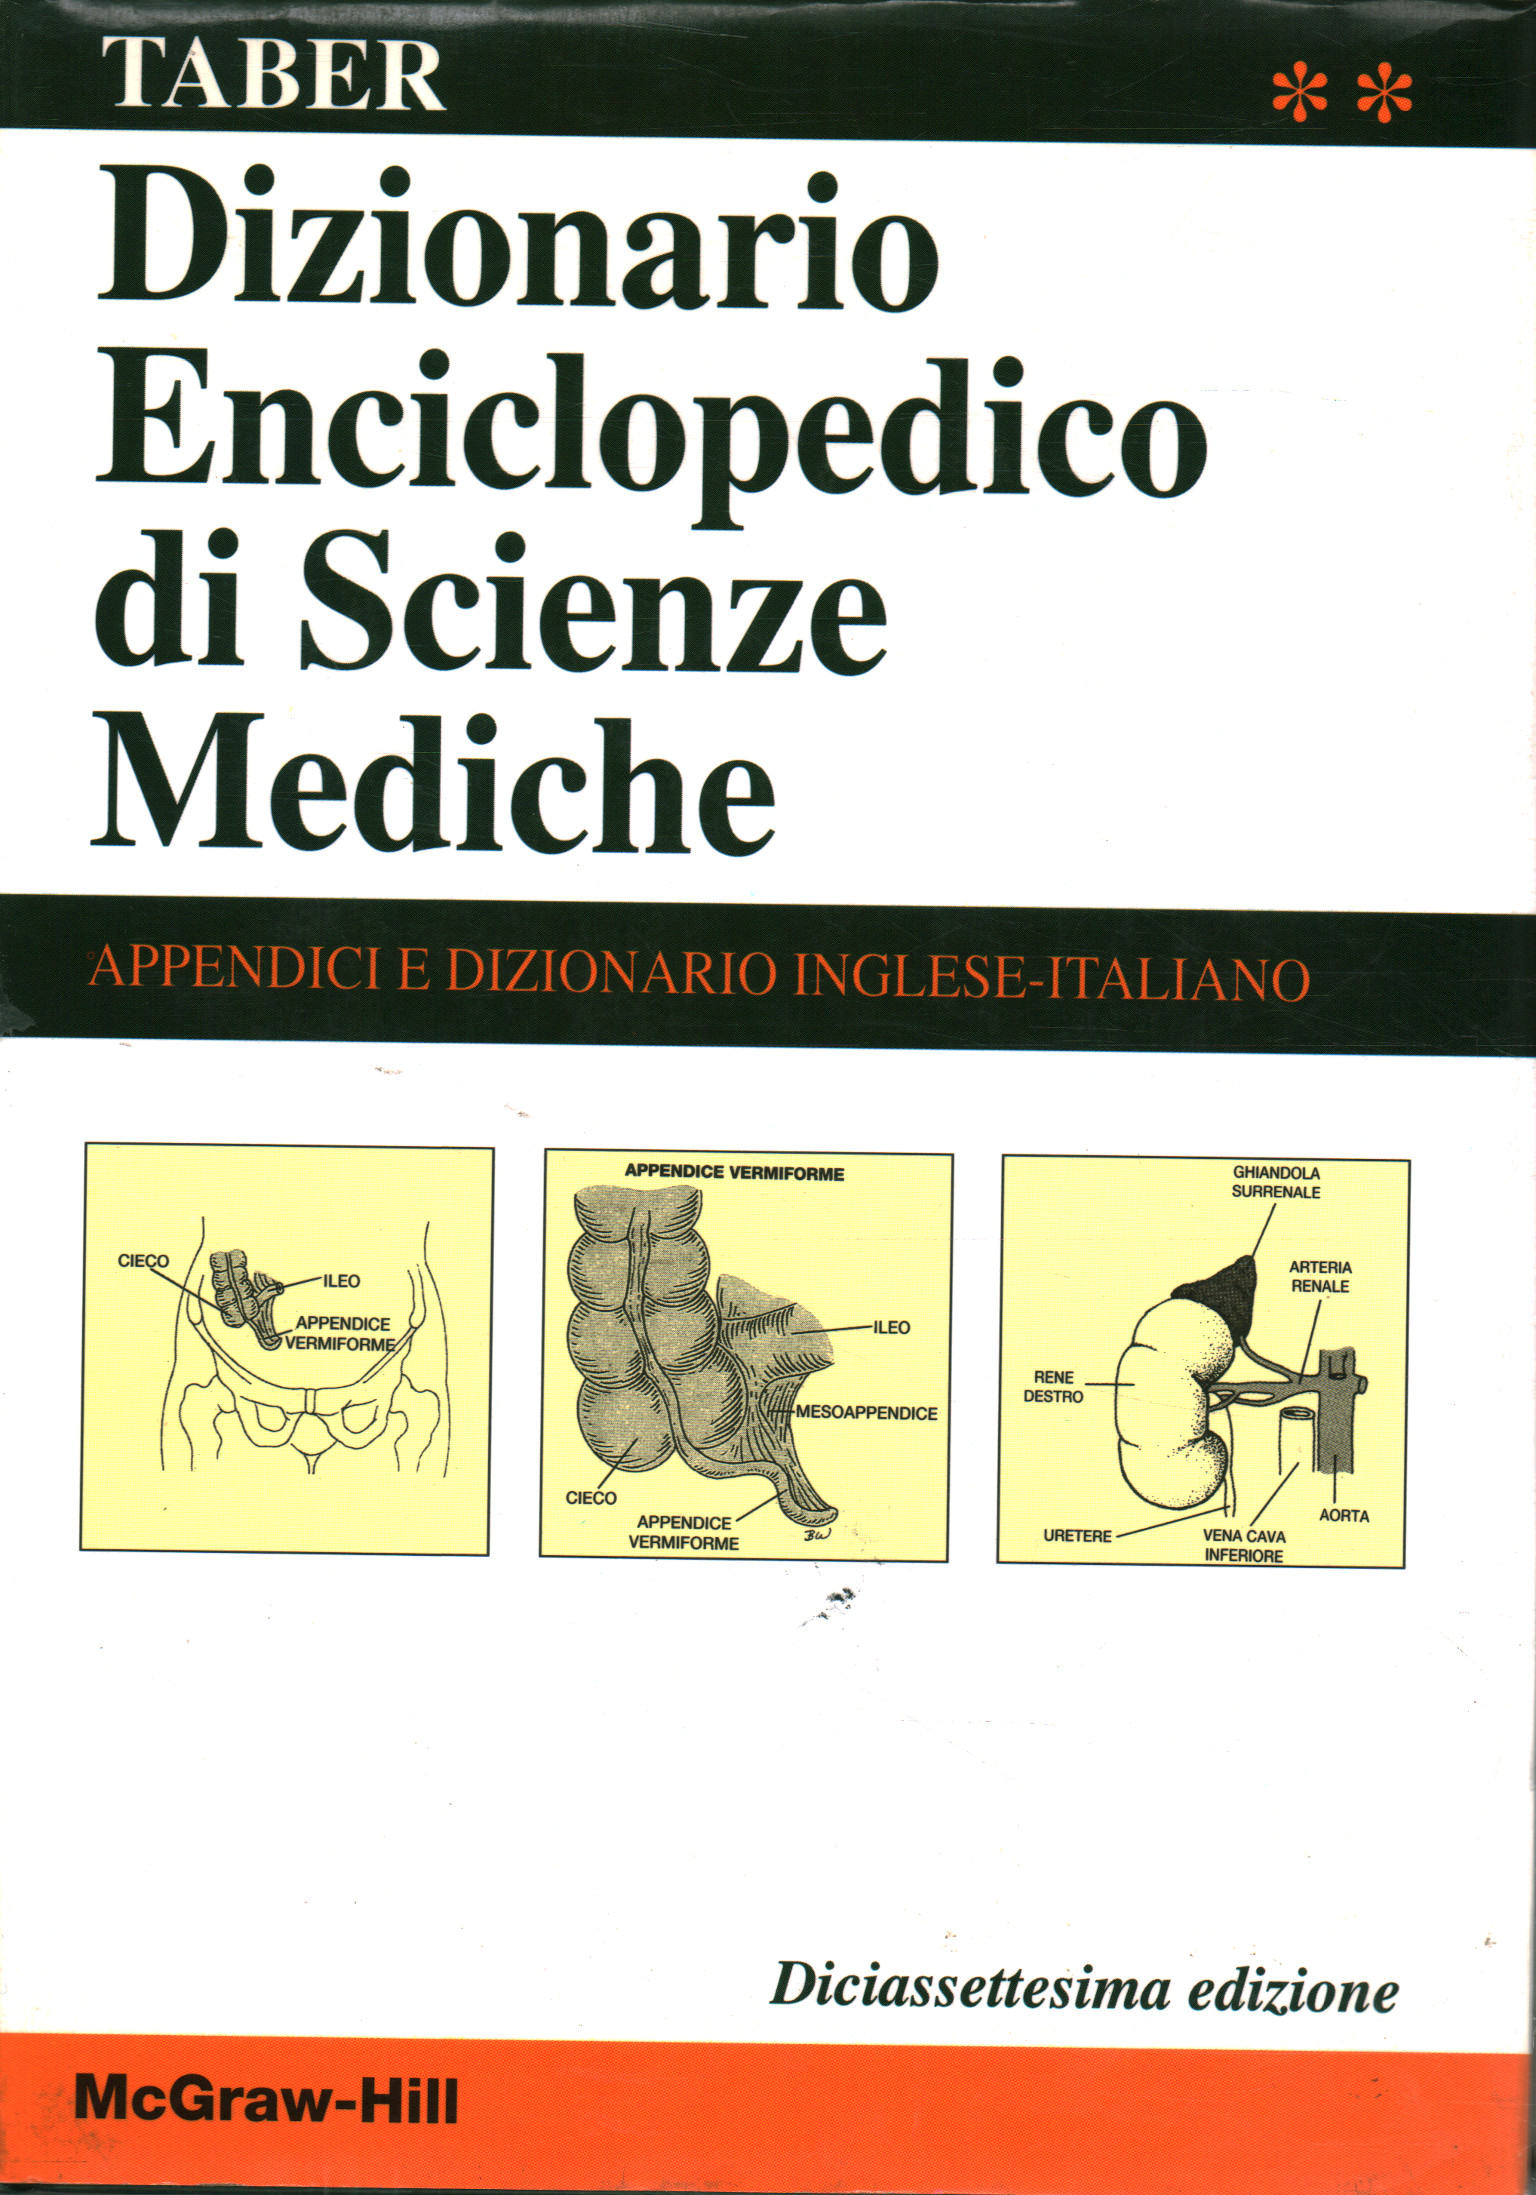 Dictionnaire encyclopédique des sciences médicales. Volum, Clayton L.Thomas